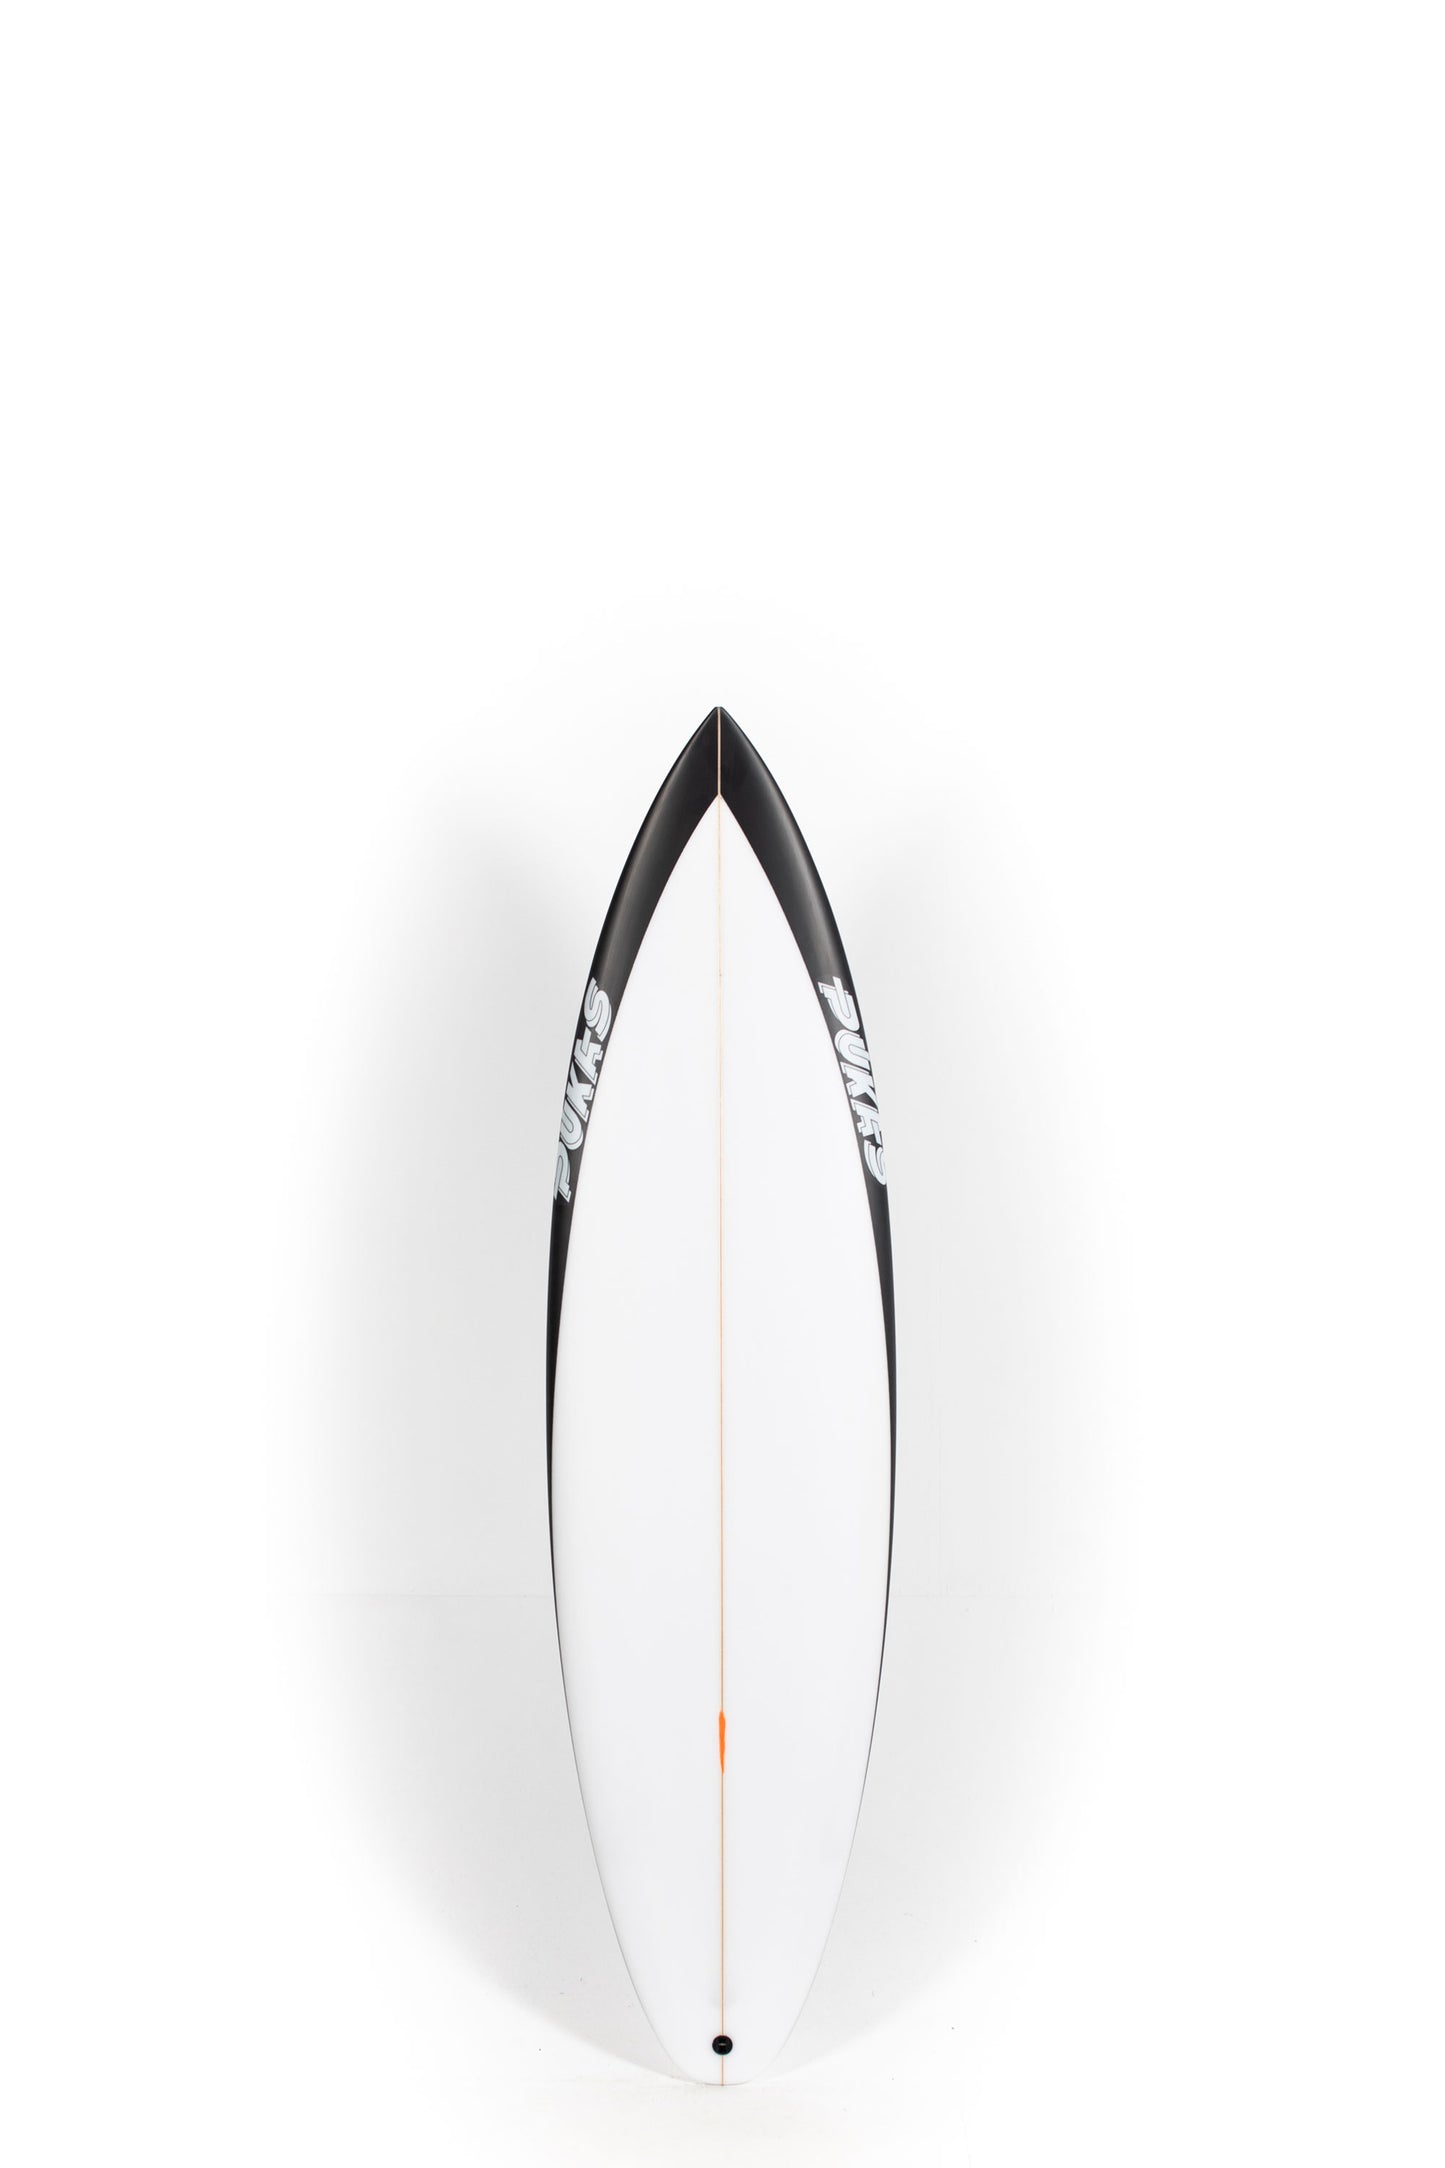 Pukas Surf Shop - Pukas Surfboard - WATER LION by Chris Christenson - 6’0” x 18,63 x 2,37 - 28,83L - PC00840